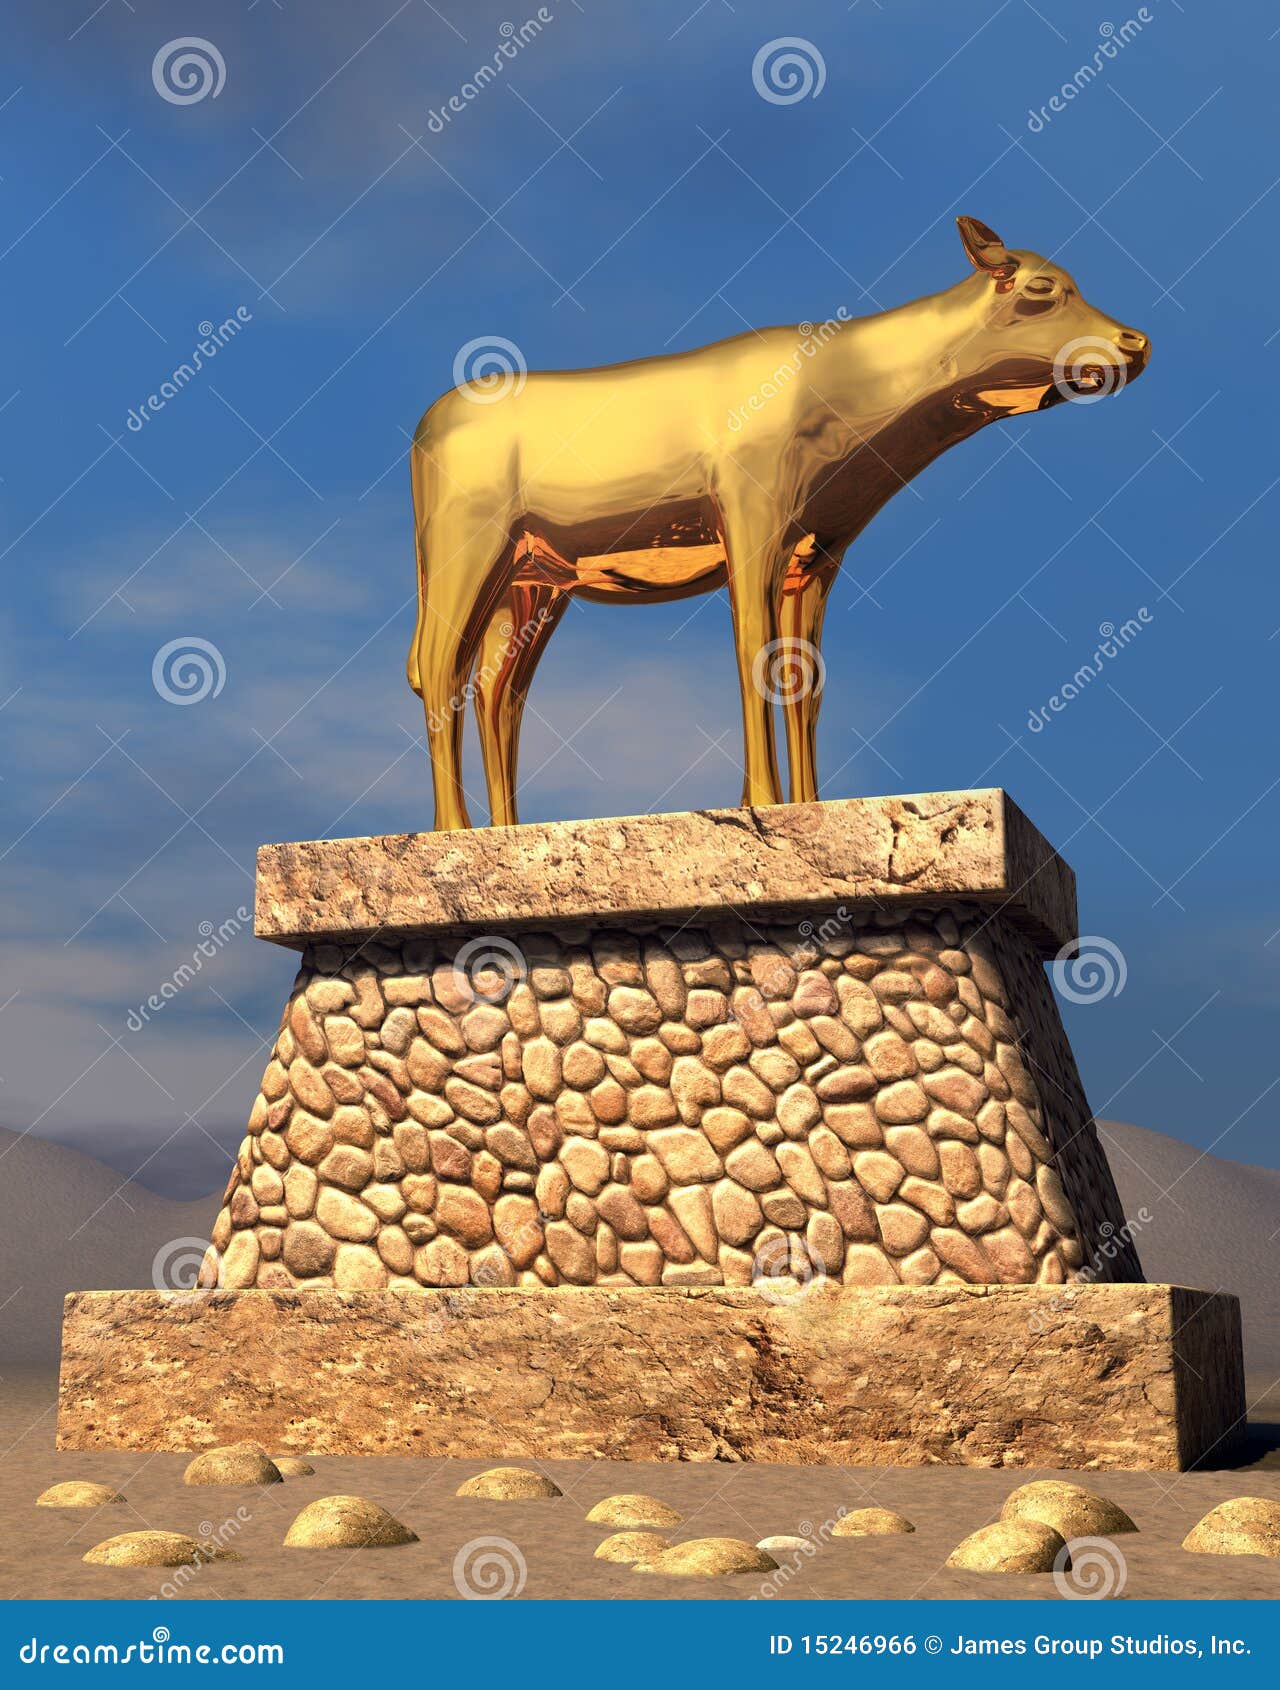 golden calf